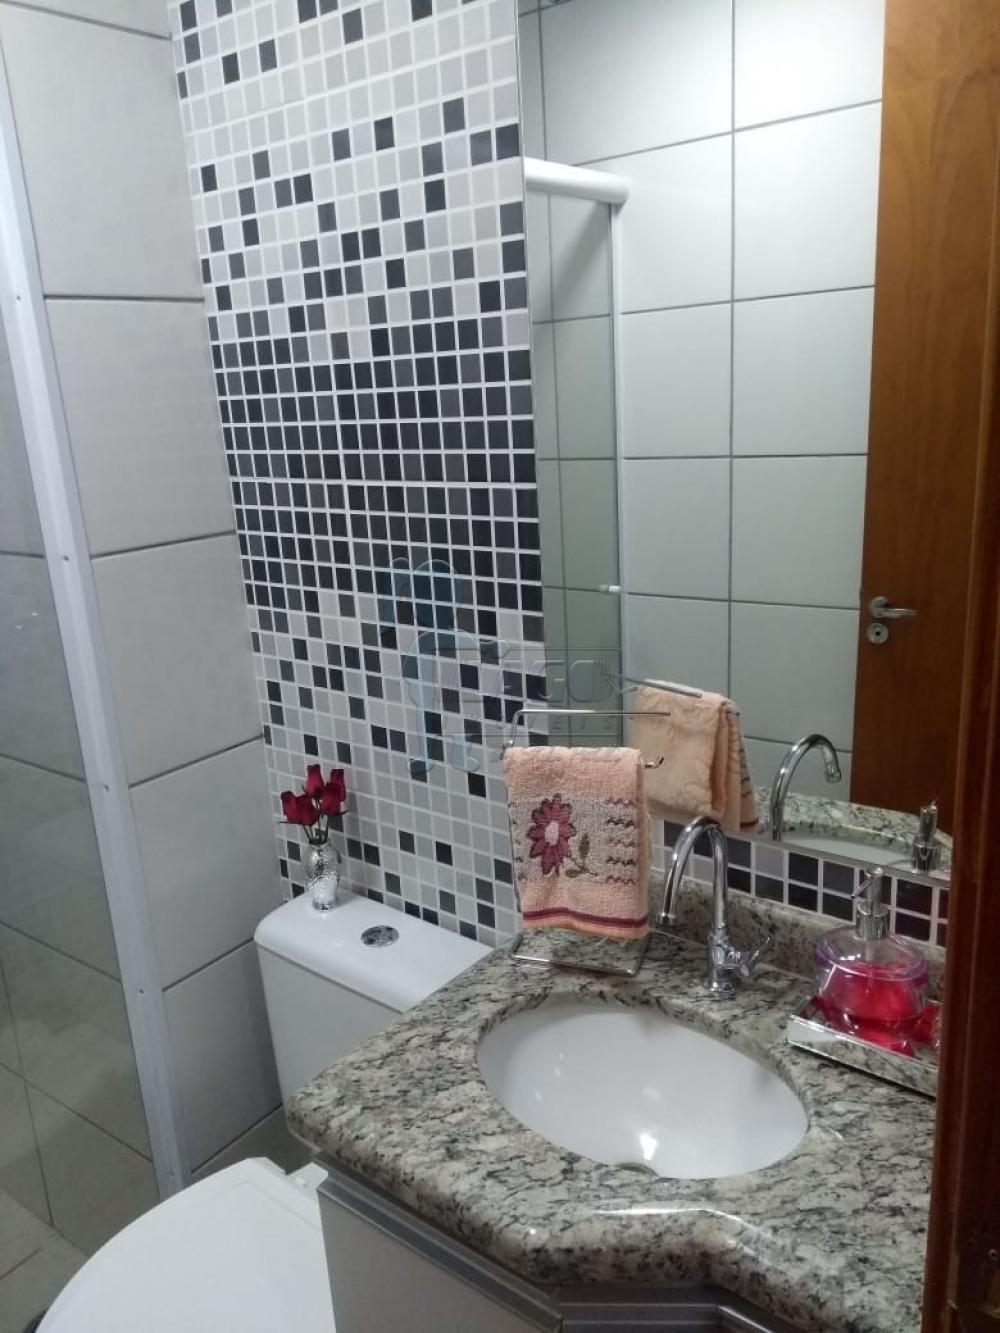 Alugar Apartamentos / Padrão em Ribeirão Preto R$ 950,00 - Foto 8